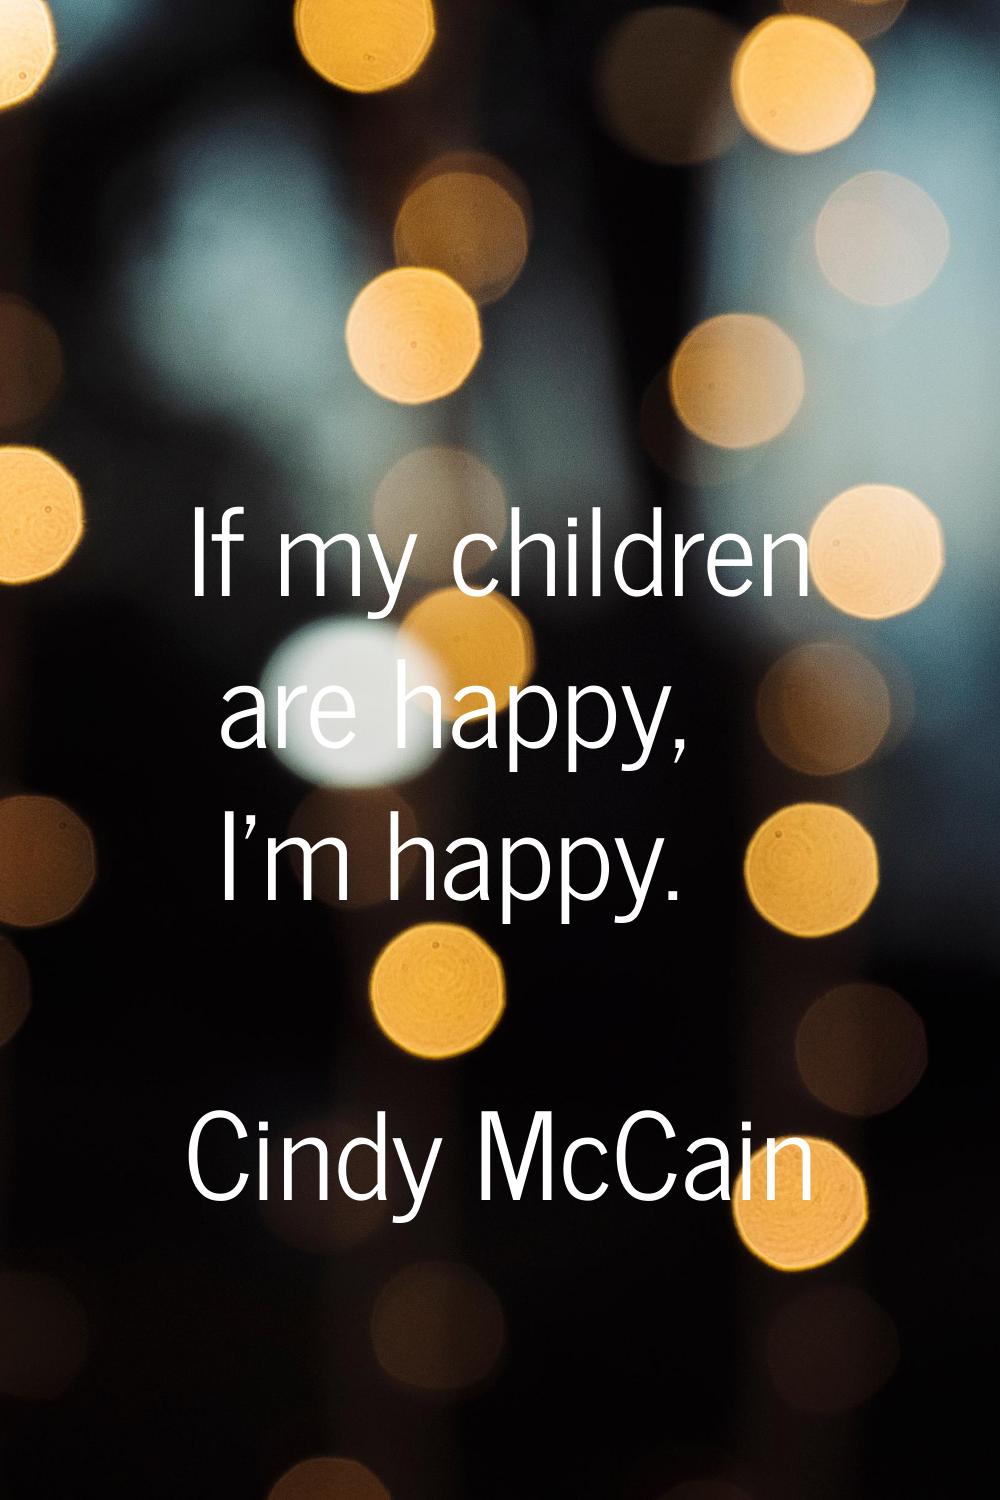 If my children are happy, I'm happy.